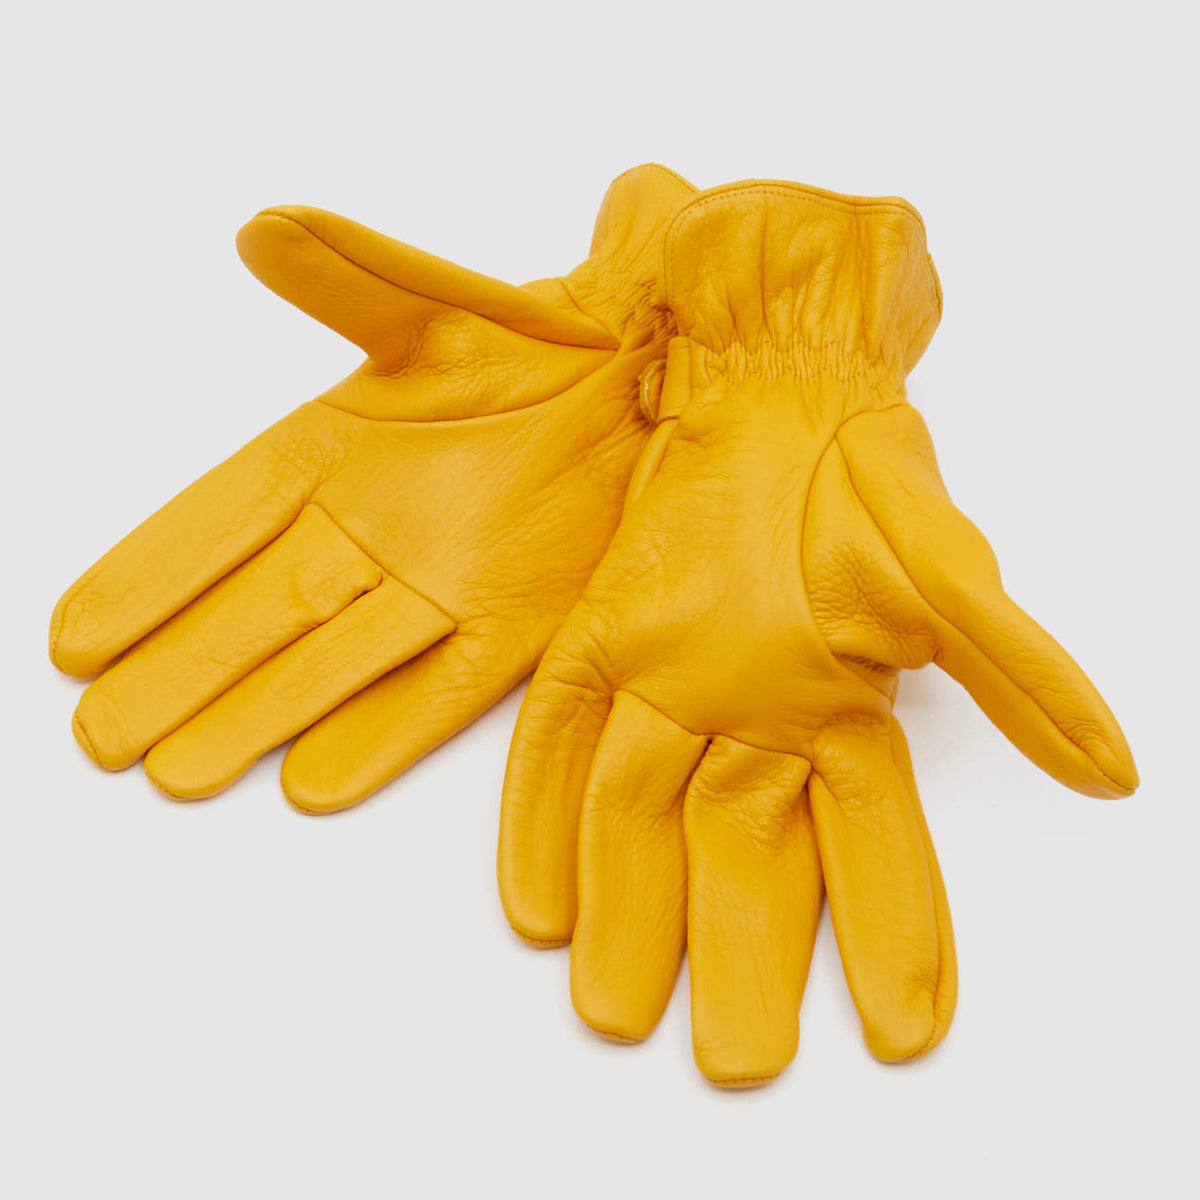 DeeCee style Deerskin Leather Work Gloves